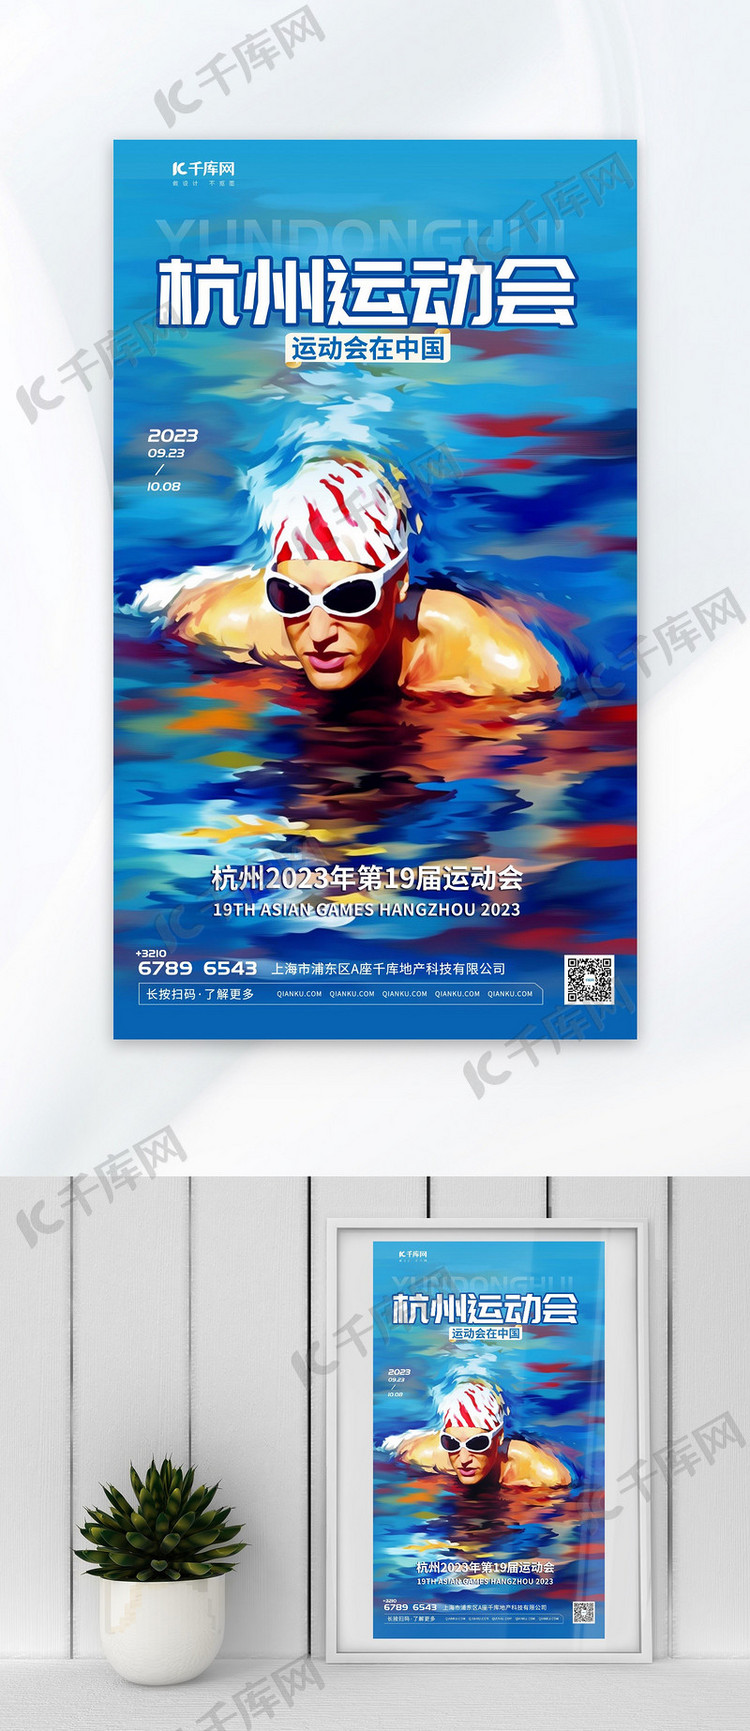 创新杭州运动会游泳比赛插画蓝色渐变AIGC广告宣传海报